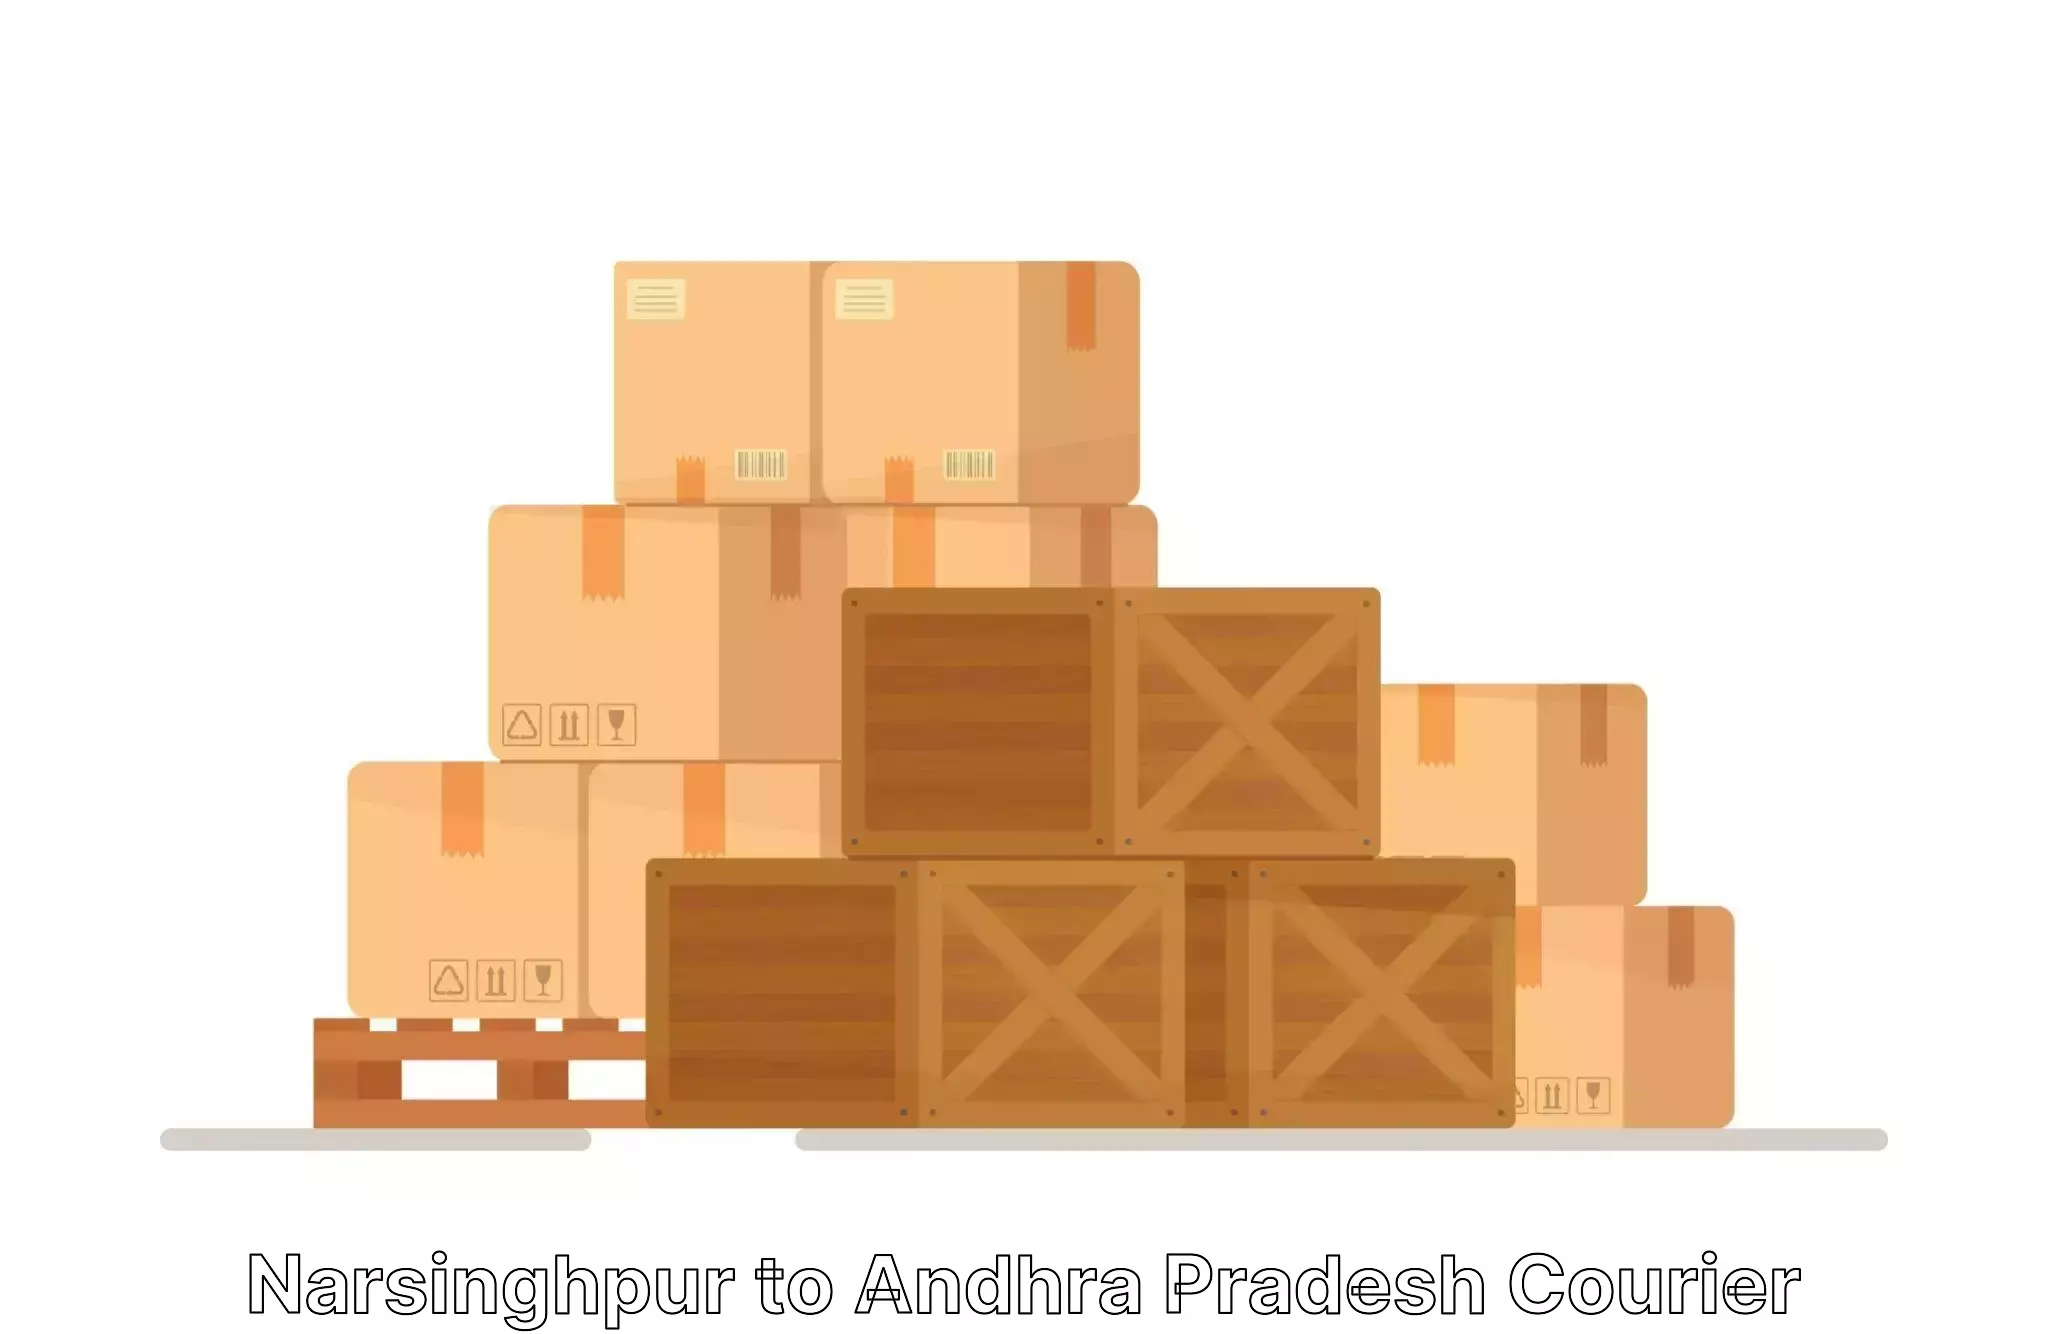 Safe moving services Narsinghpur to Andhra Pradesh